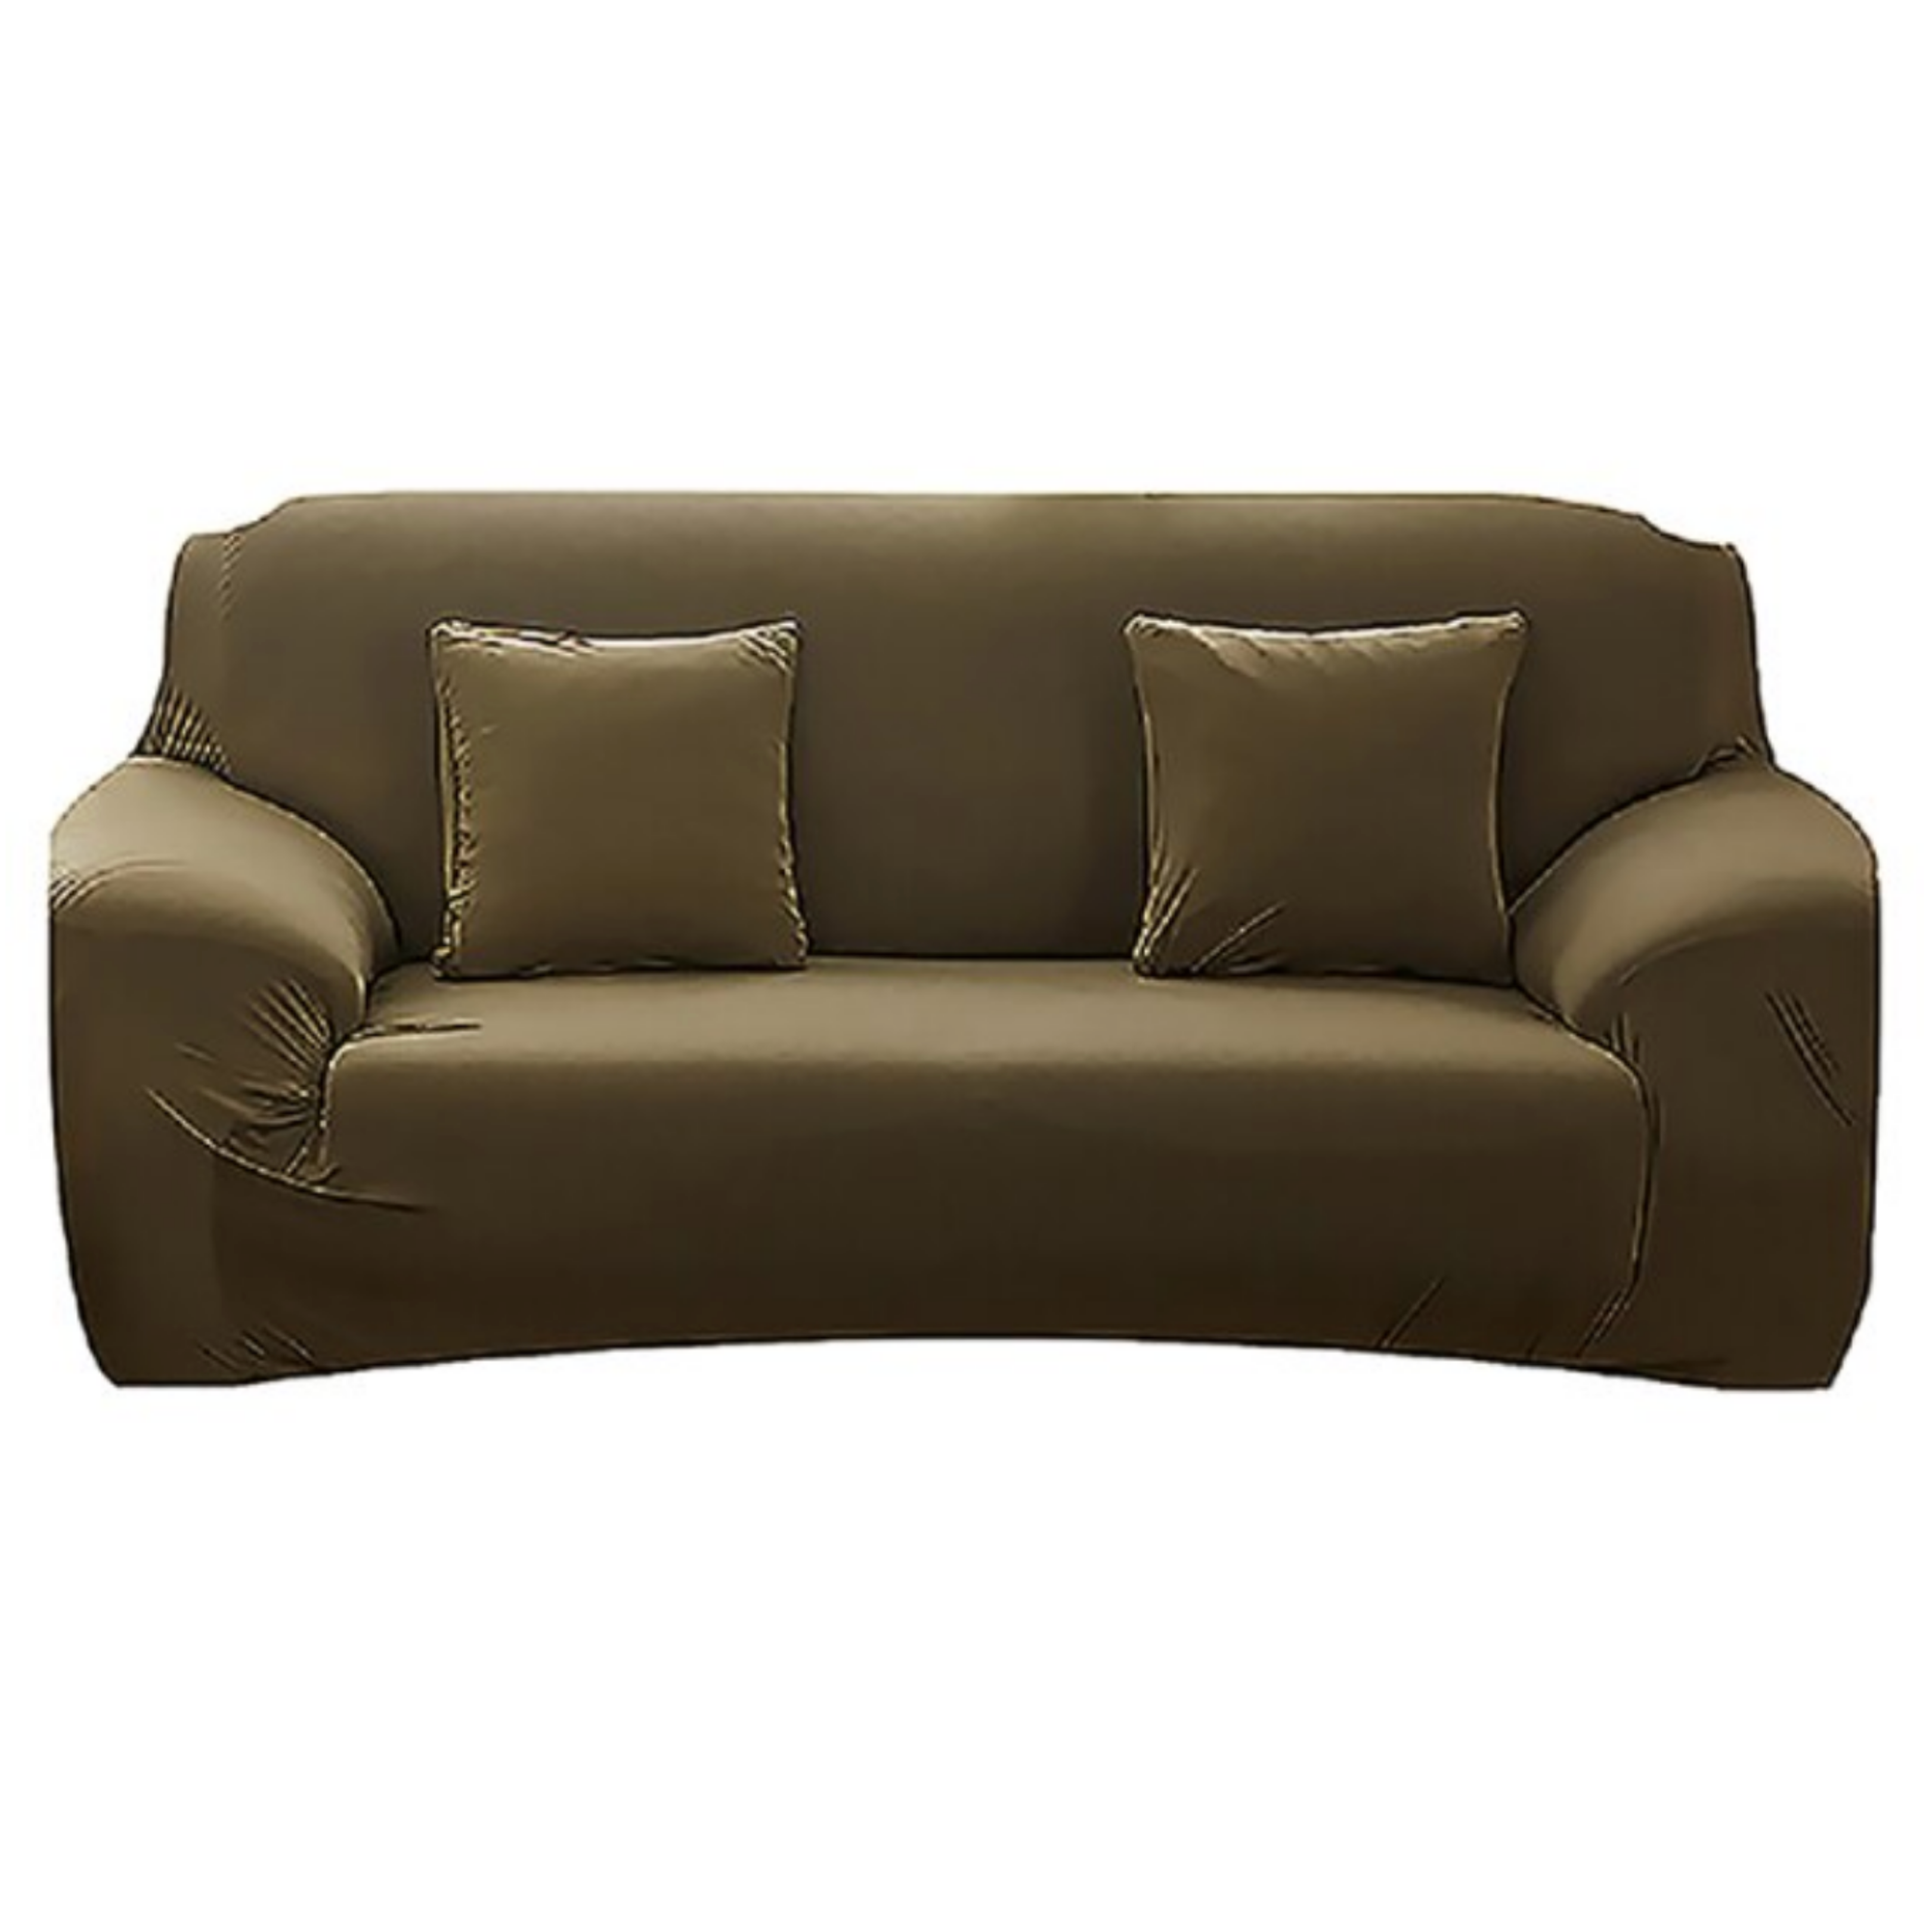 Sofa Cover ™ Elastic Sofa Cover